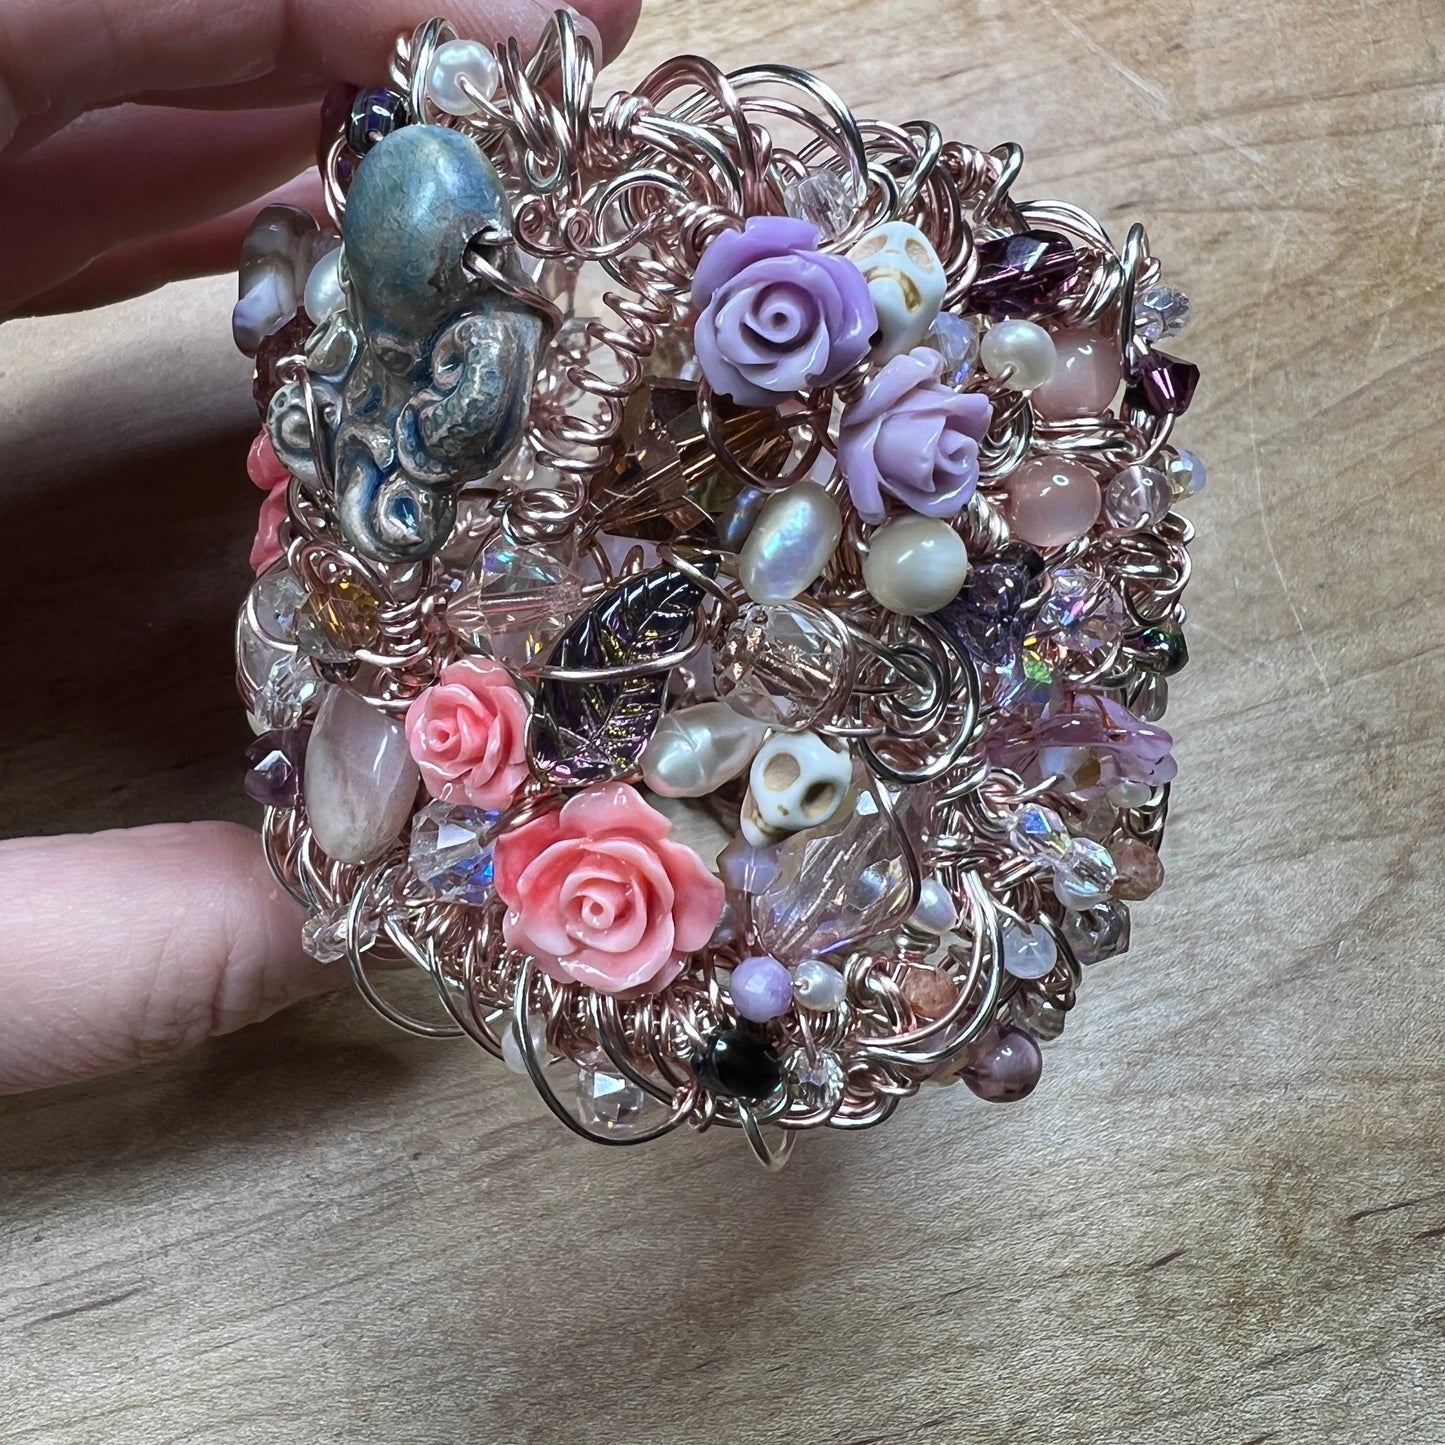 Mermaid Crown cuff bracelet